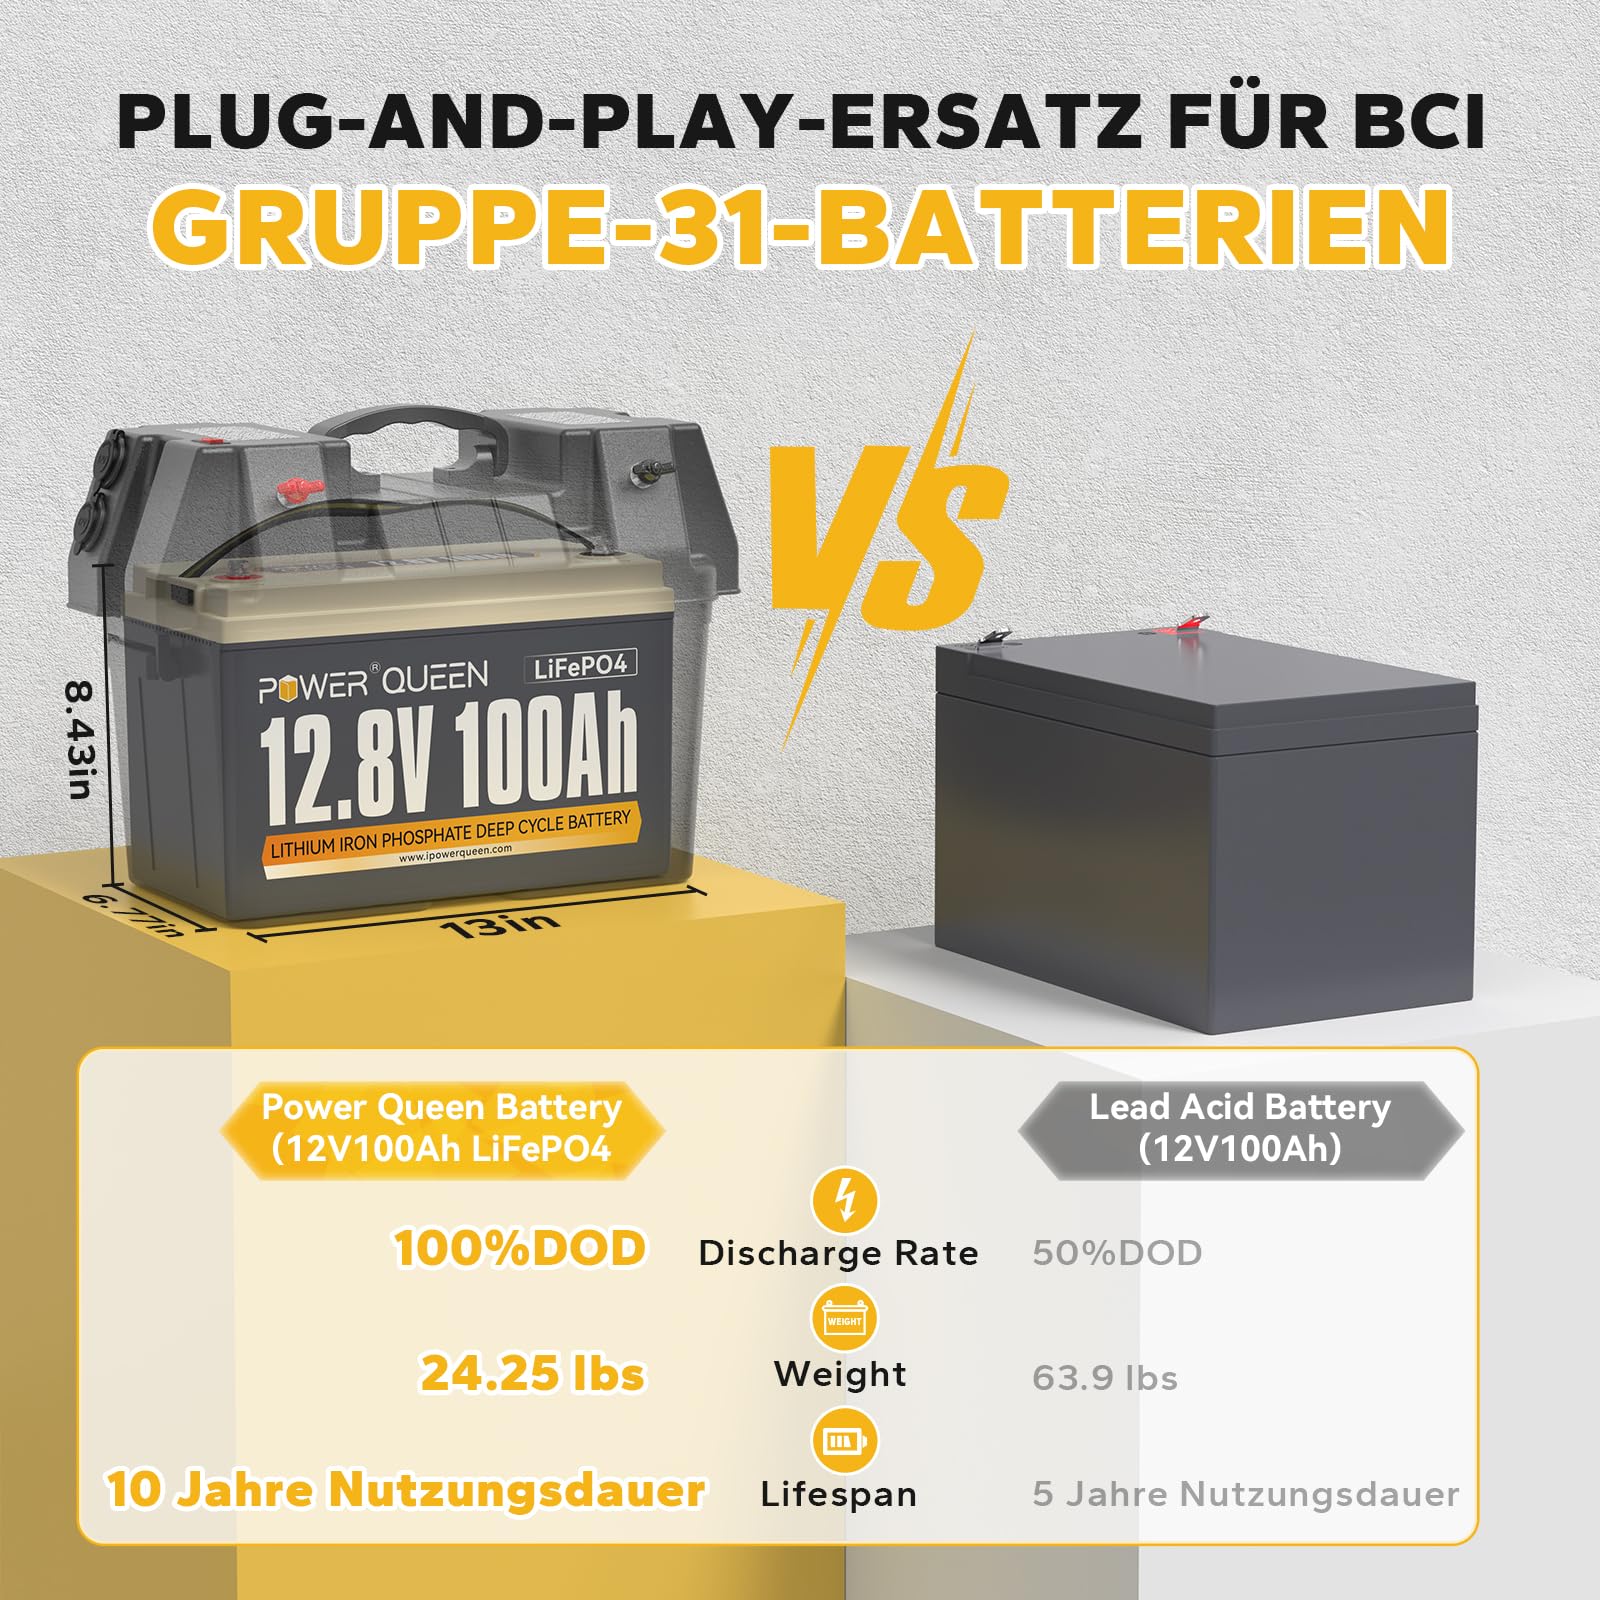 Batteria Power Queen 12,8 V 100 Ah LiFePO4, BMS integrato da 100 A